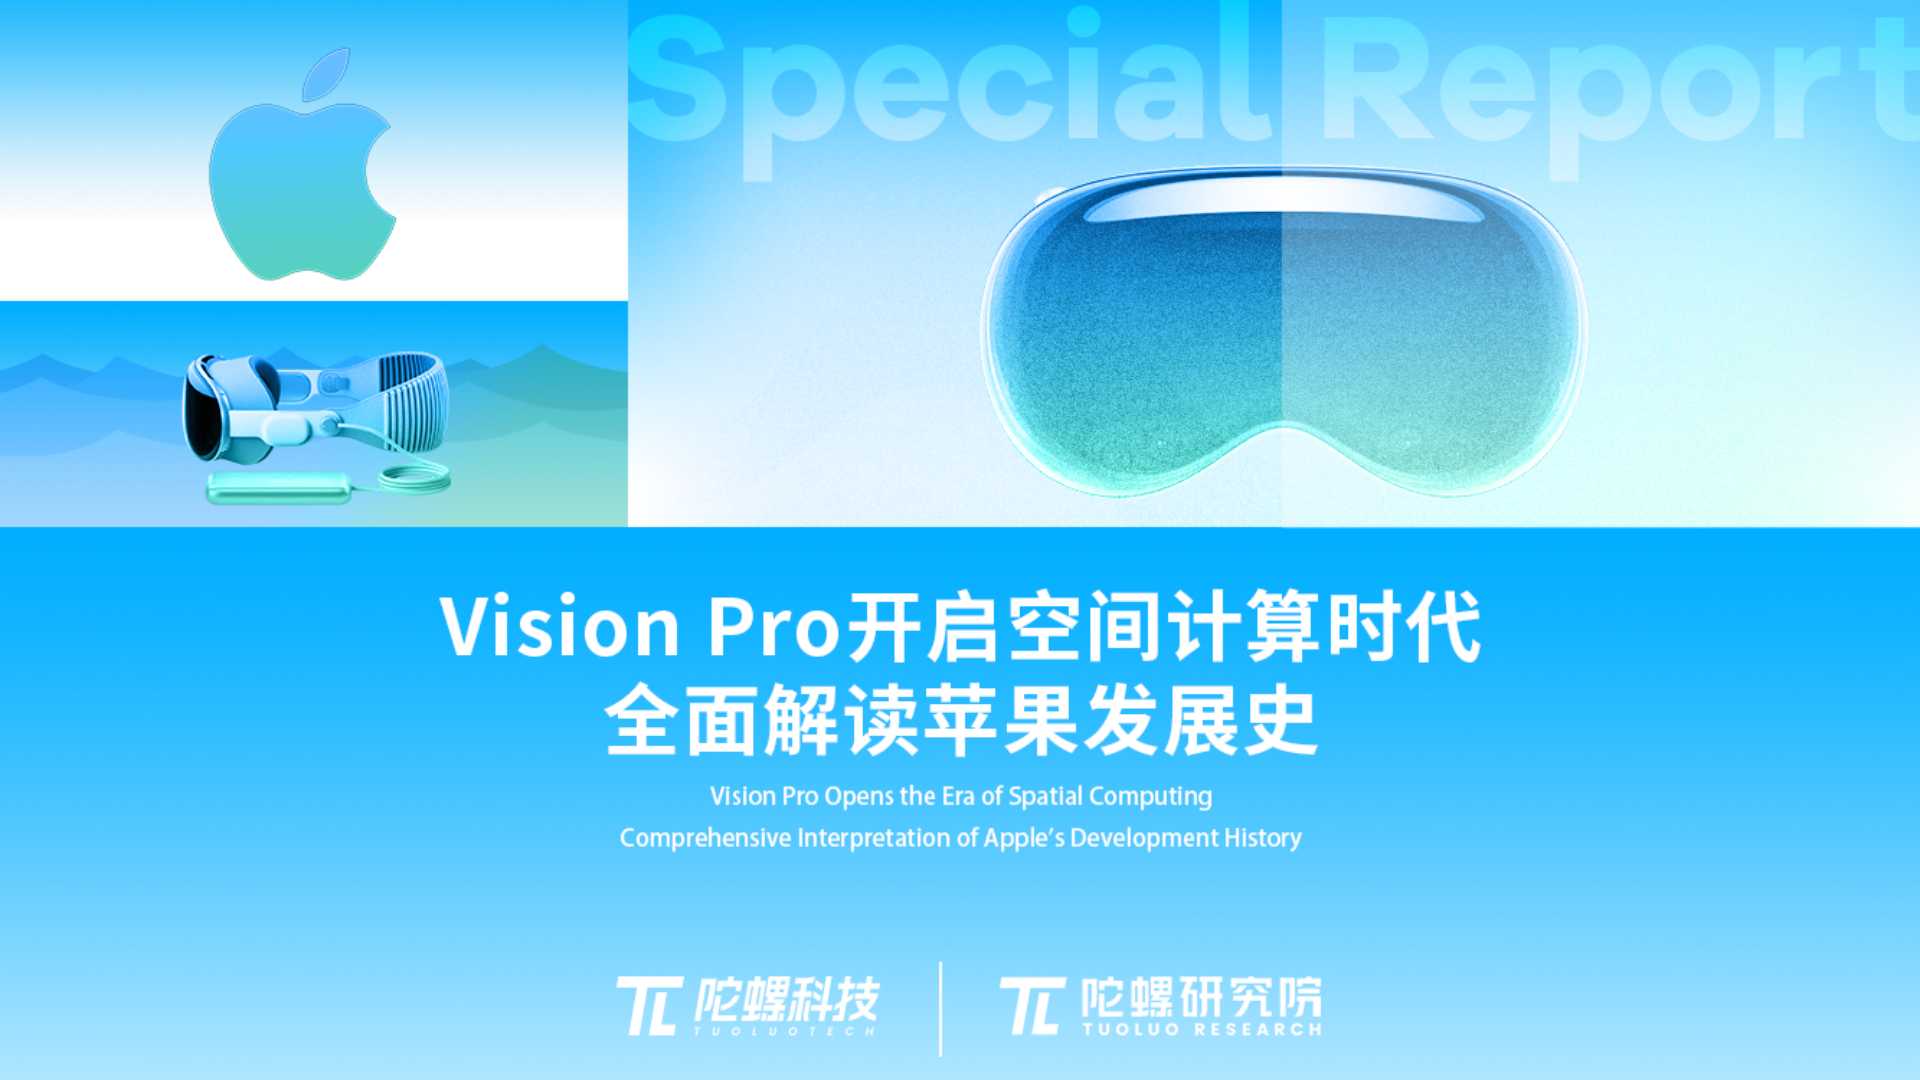 陀螺研究院发布《Vision Pro开启空间计算时代，全面解读苹果发展史》